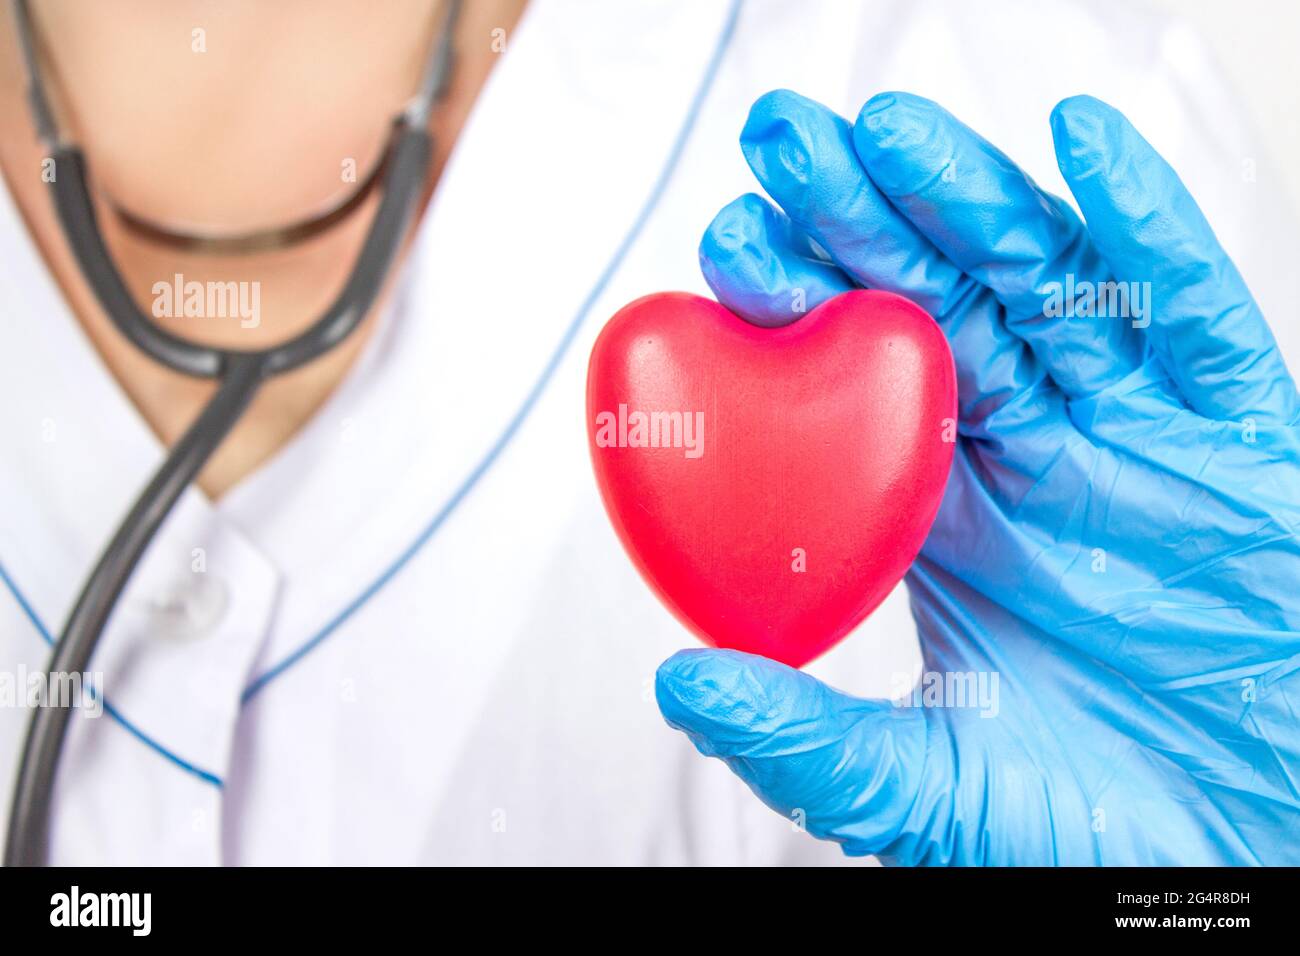 Ambulanza. Cardiologia Sanità. Primo piano mano del medico che tiene un cuore rosso all'ufficio dell'ospedale. Sanità e paziente, fallimento e malattie concetto Foto Stock